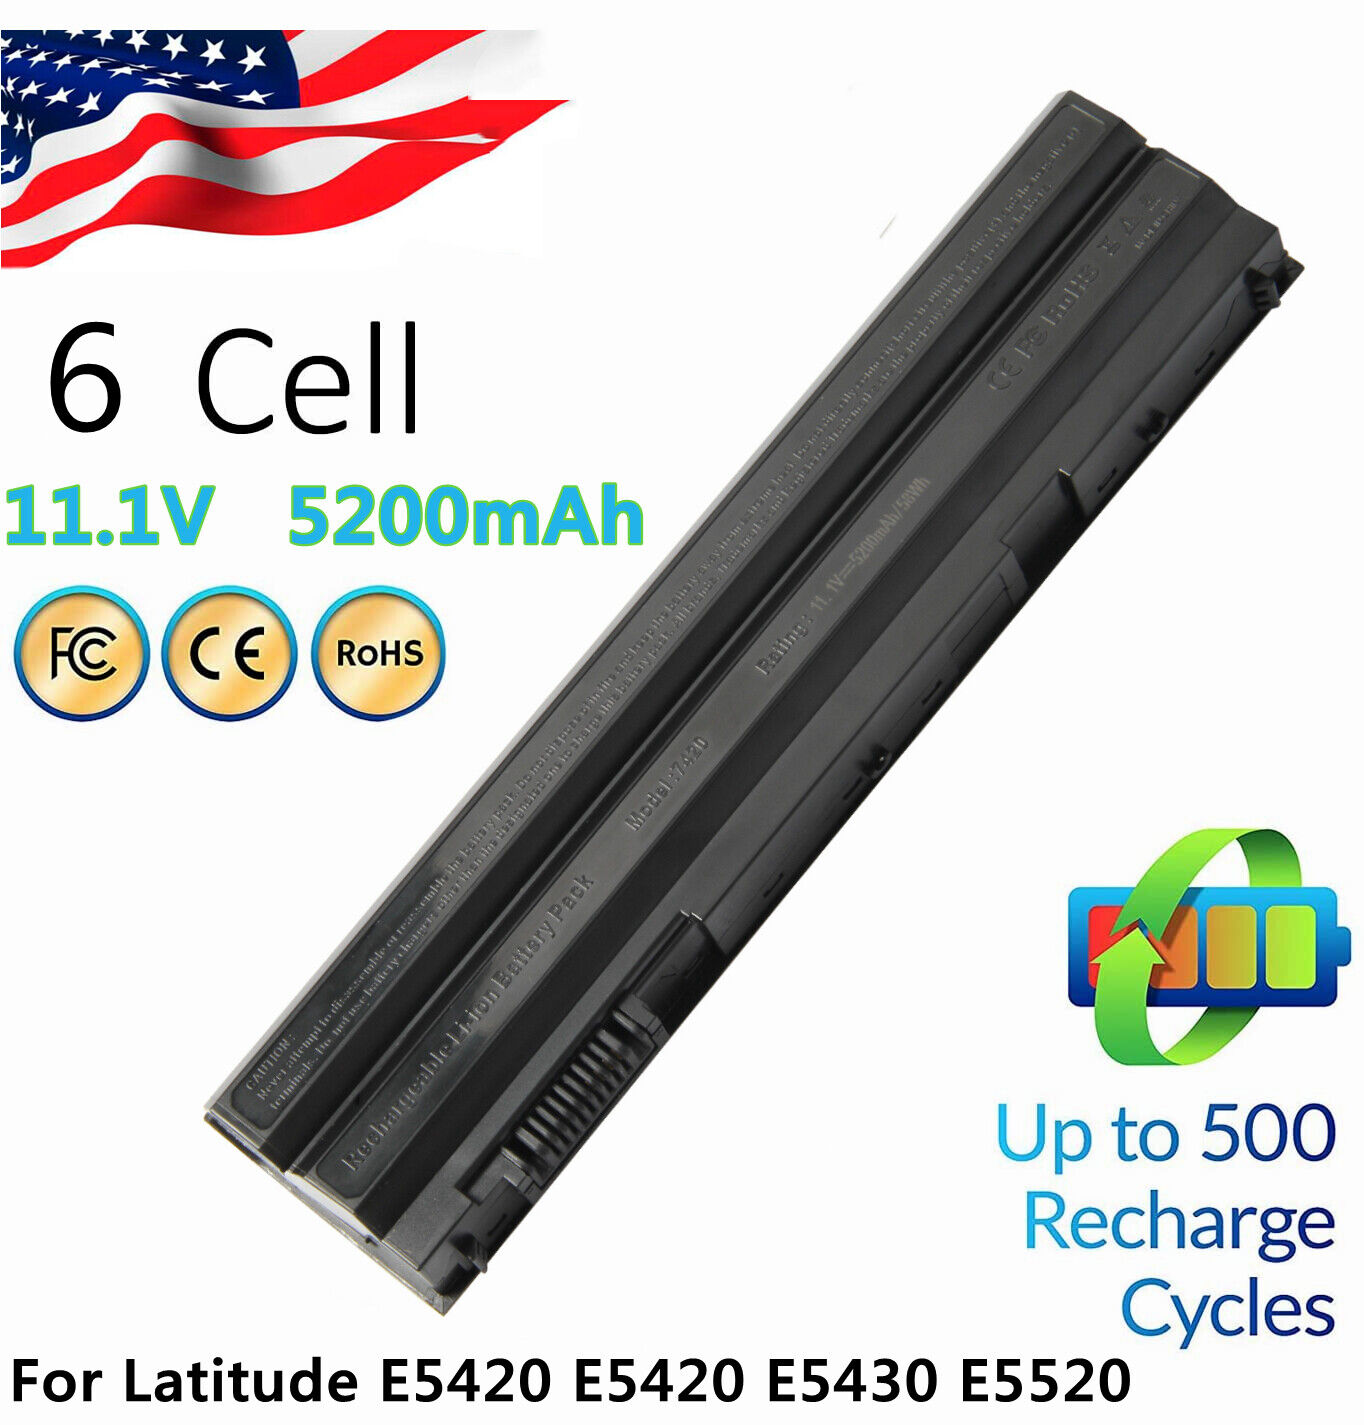 T54FJ Battery for Dell Latitude E6440 E5430 E5520 E5530 E6420 E6430 E6520 8858X